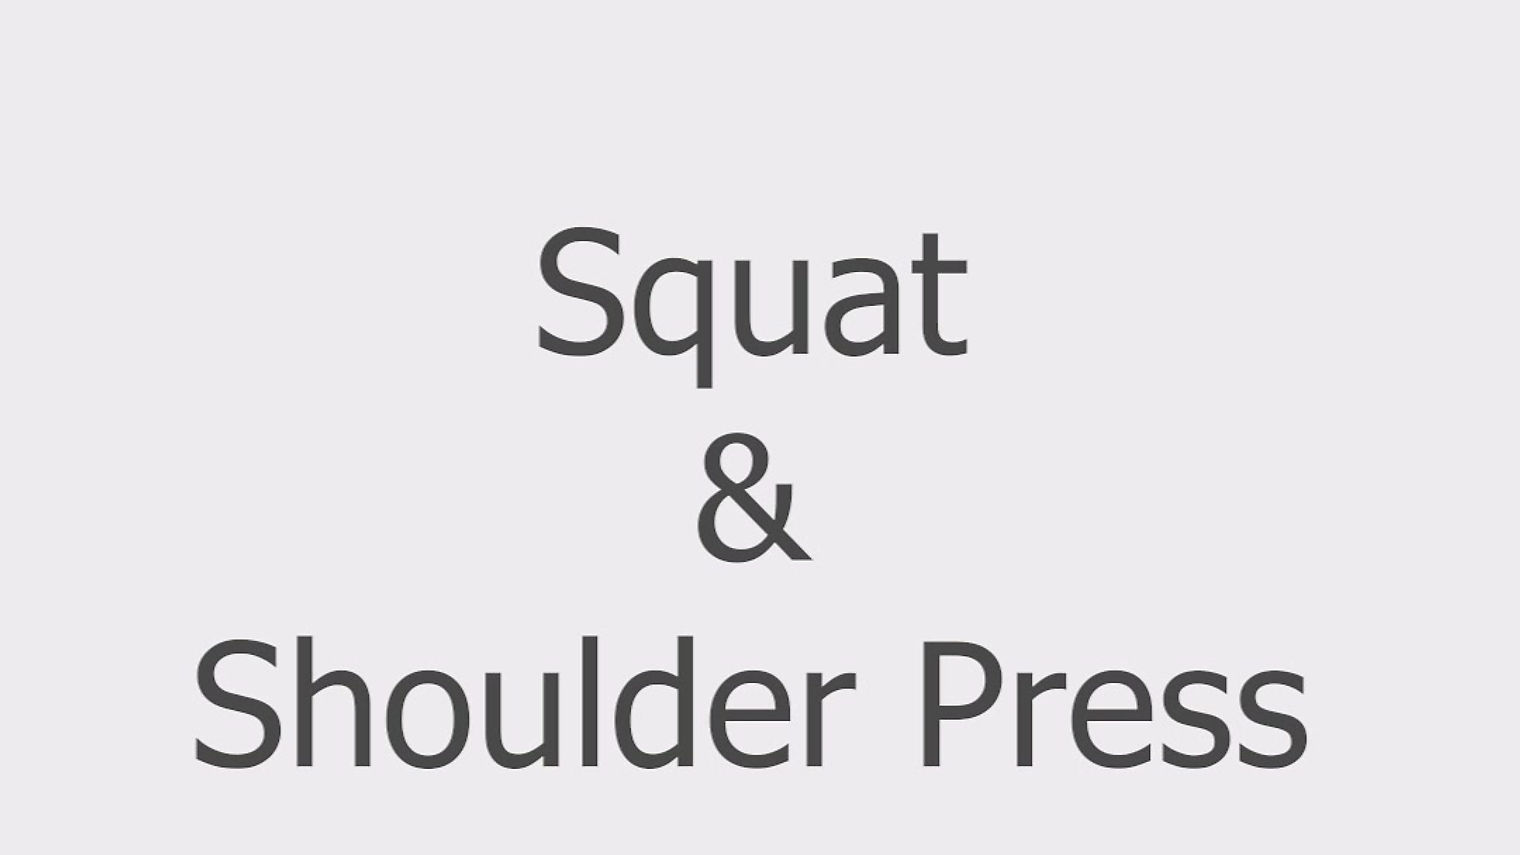 Squat & Shoulder Press